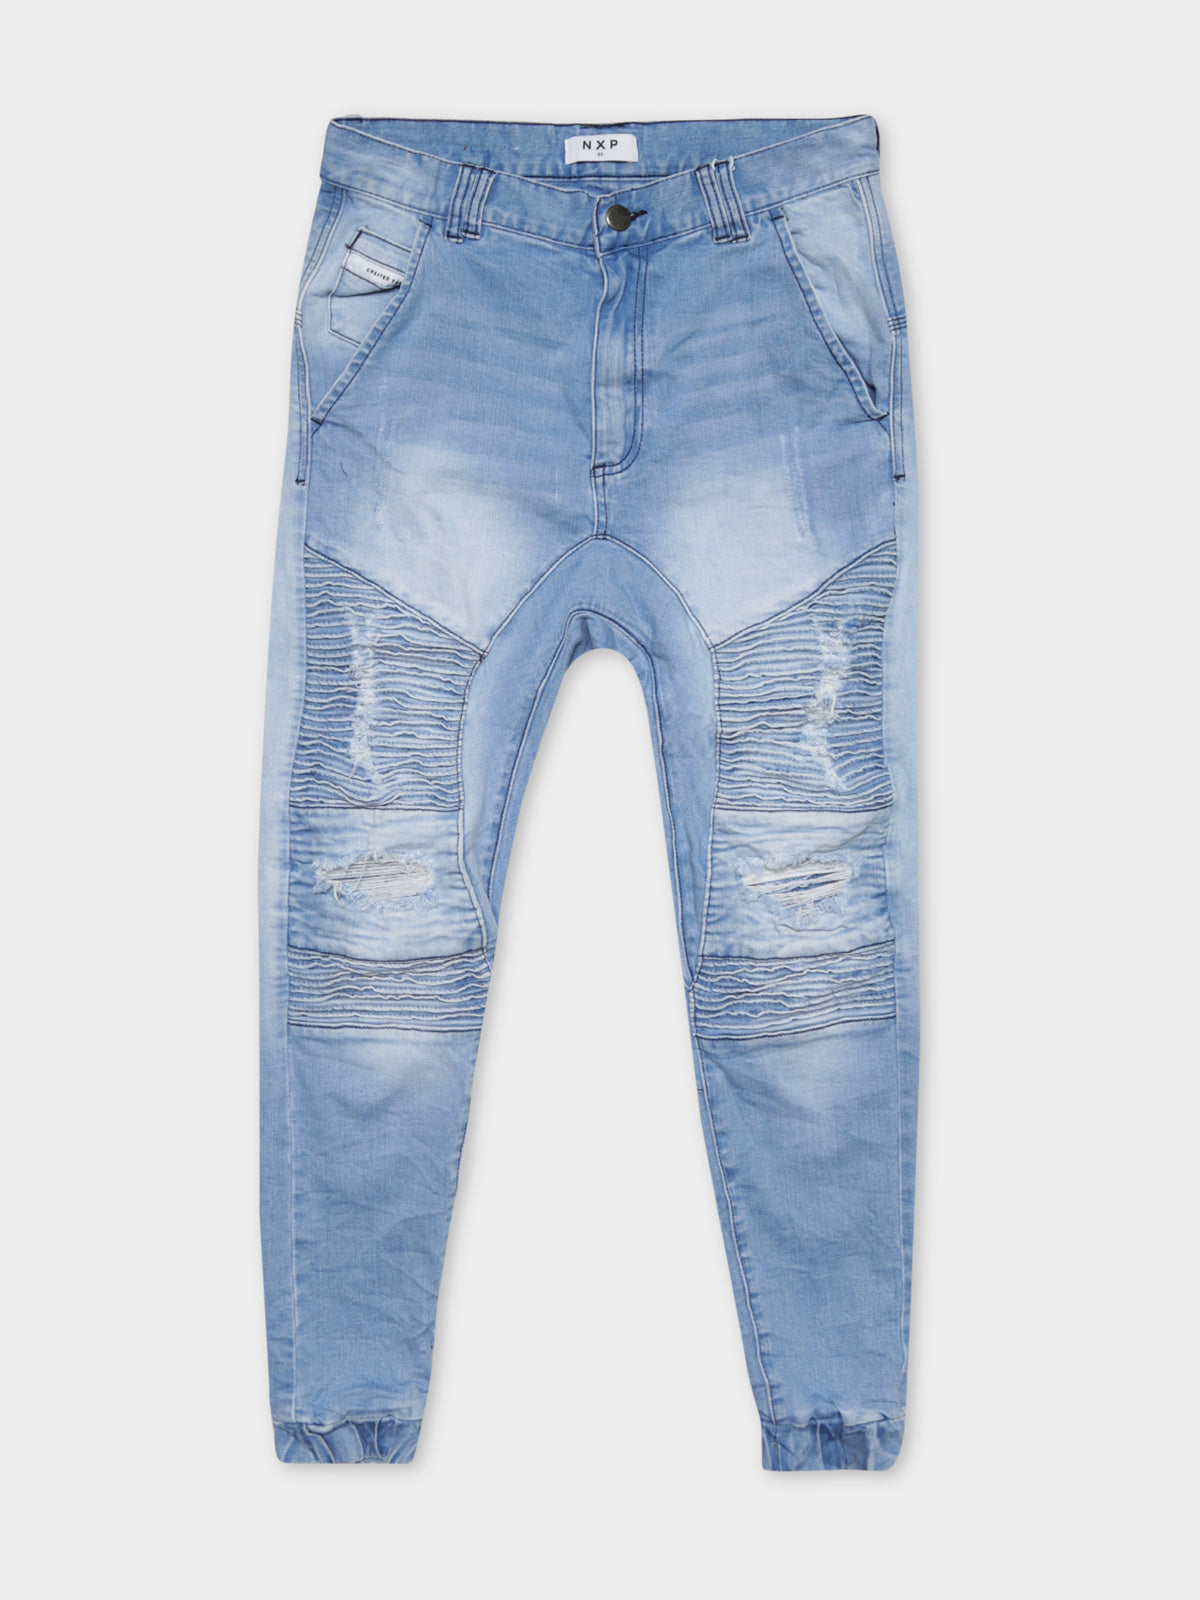 Hellcat Tight Tapered Jeans in Alaskan Blue Denim